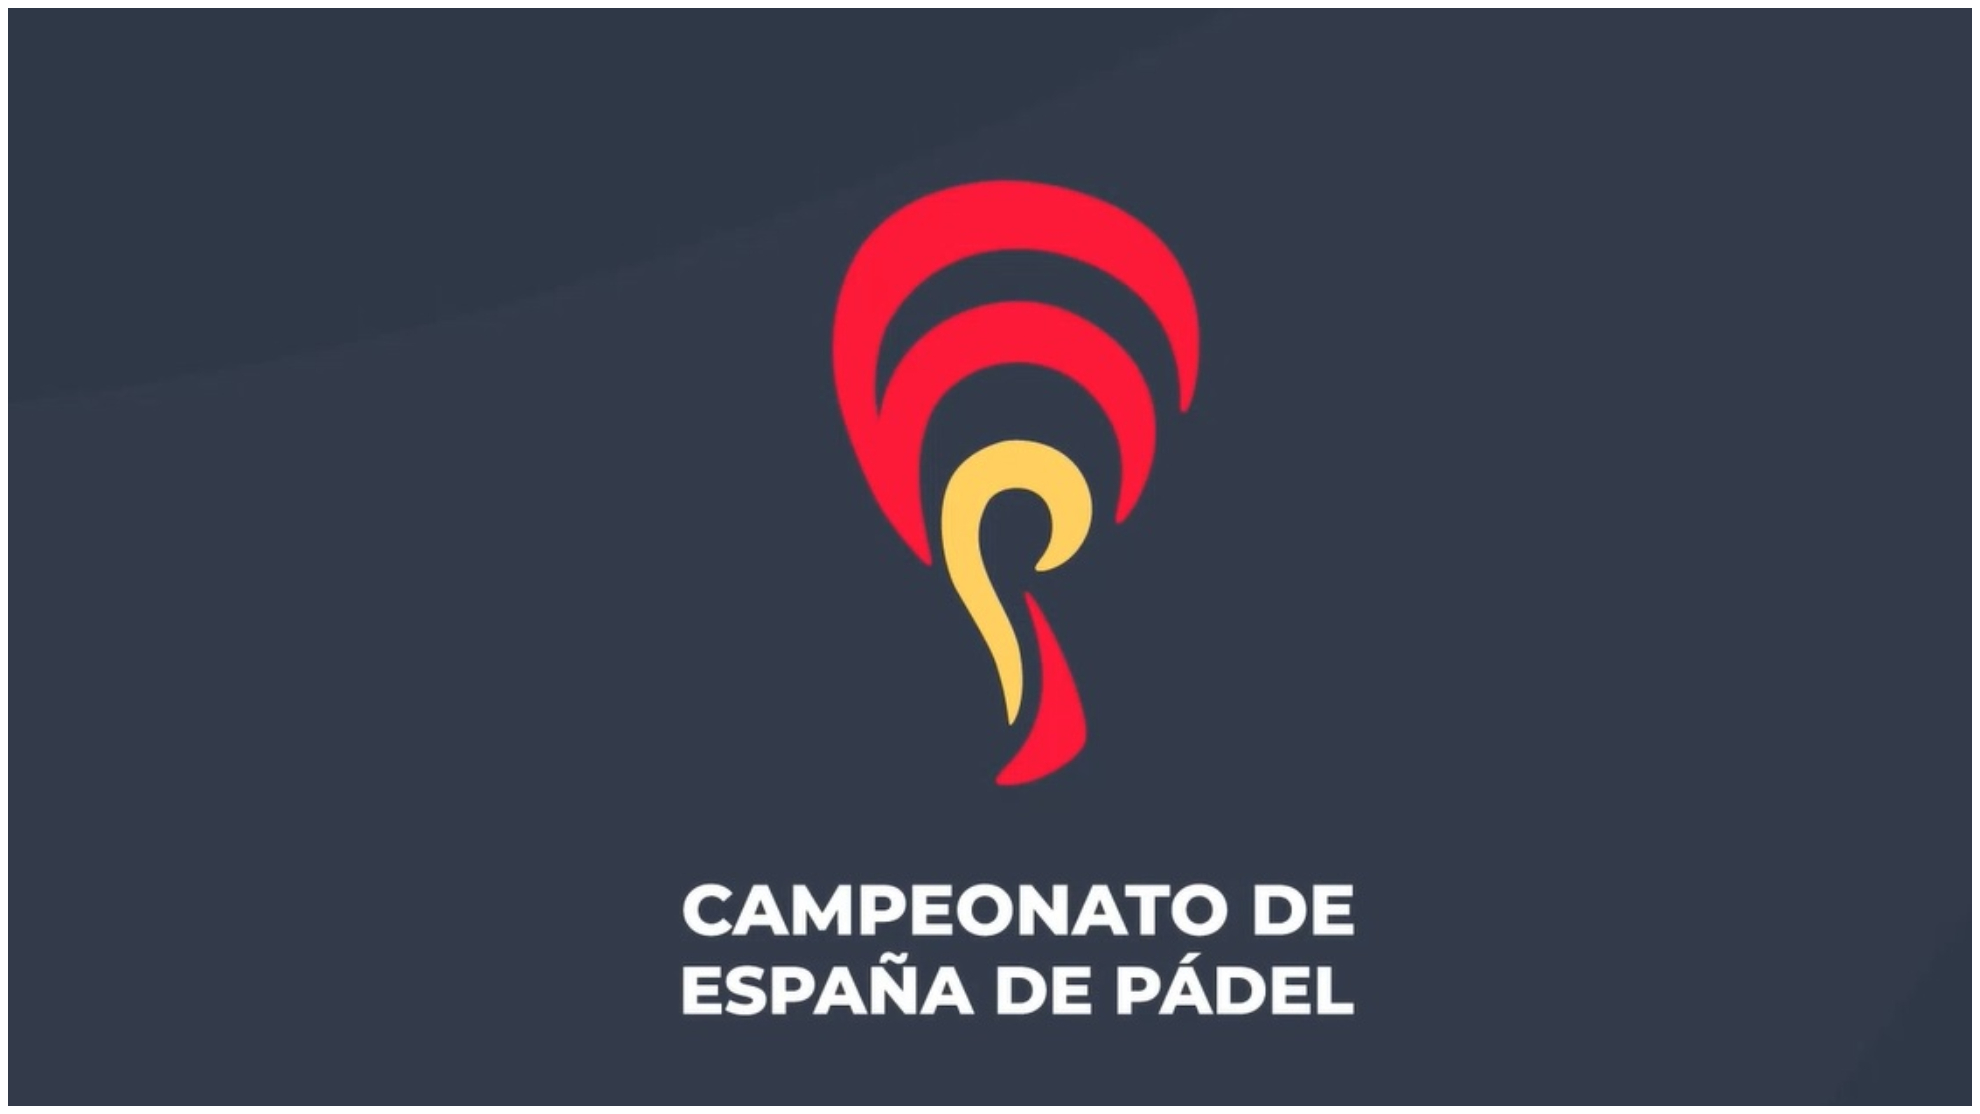 Boicotta il campionato spagnolo: il rammarico degli organizzatori